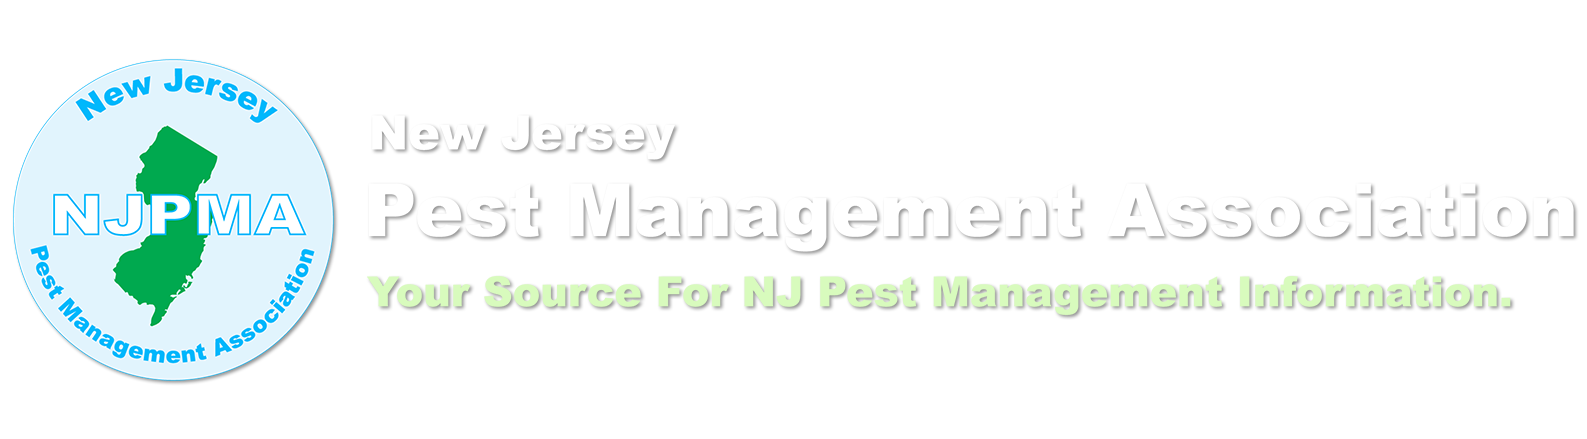 New Jersey Pest Management Association